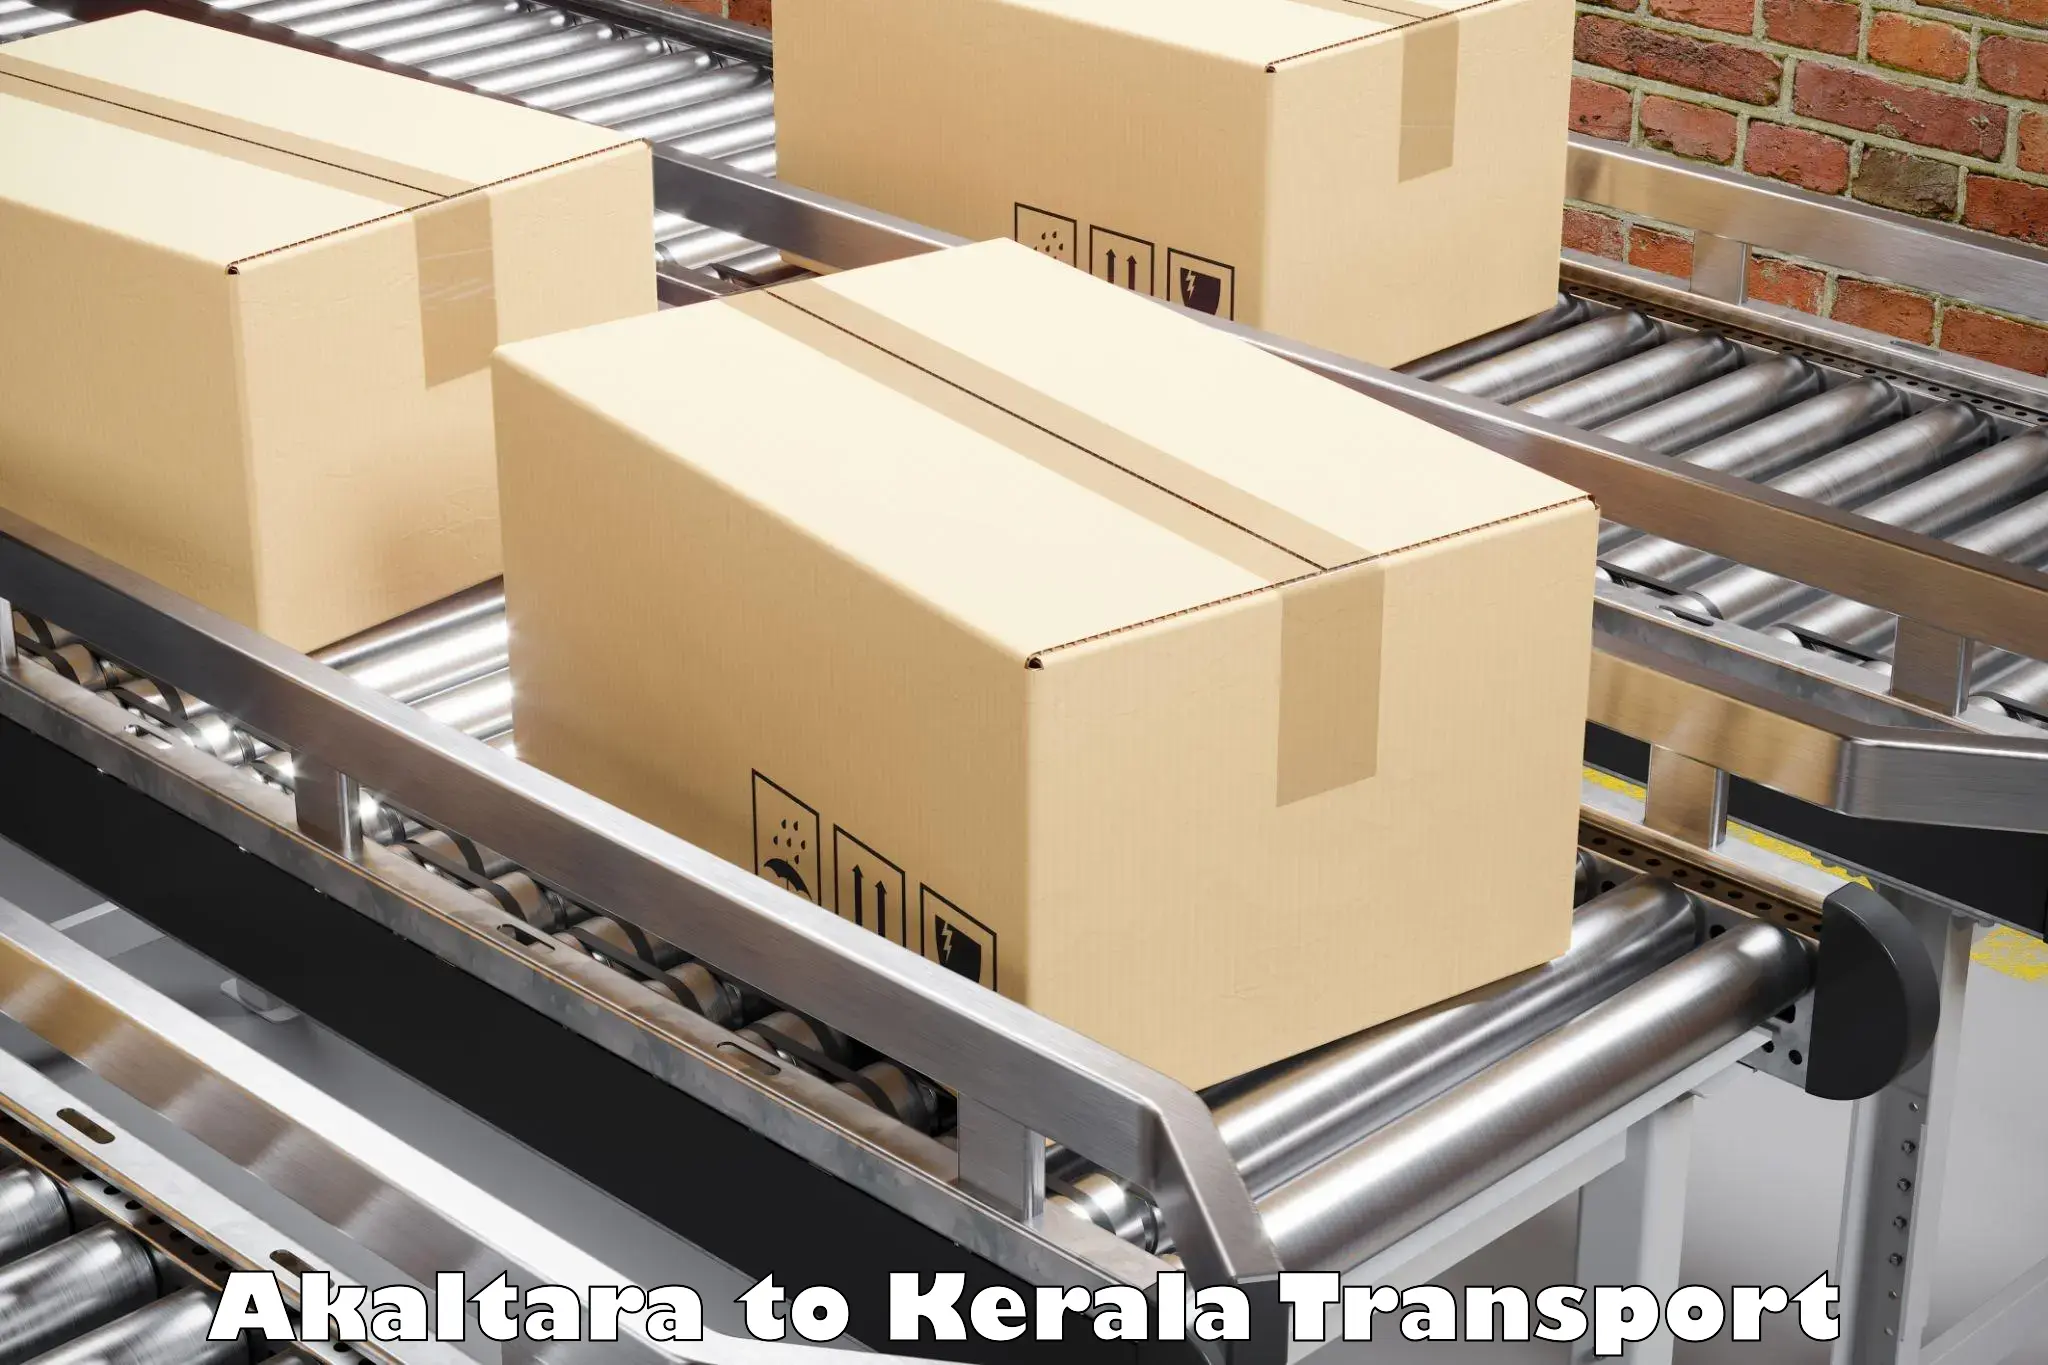 Parcel transport services Akaltara to Tiruvalla